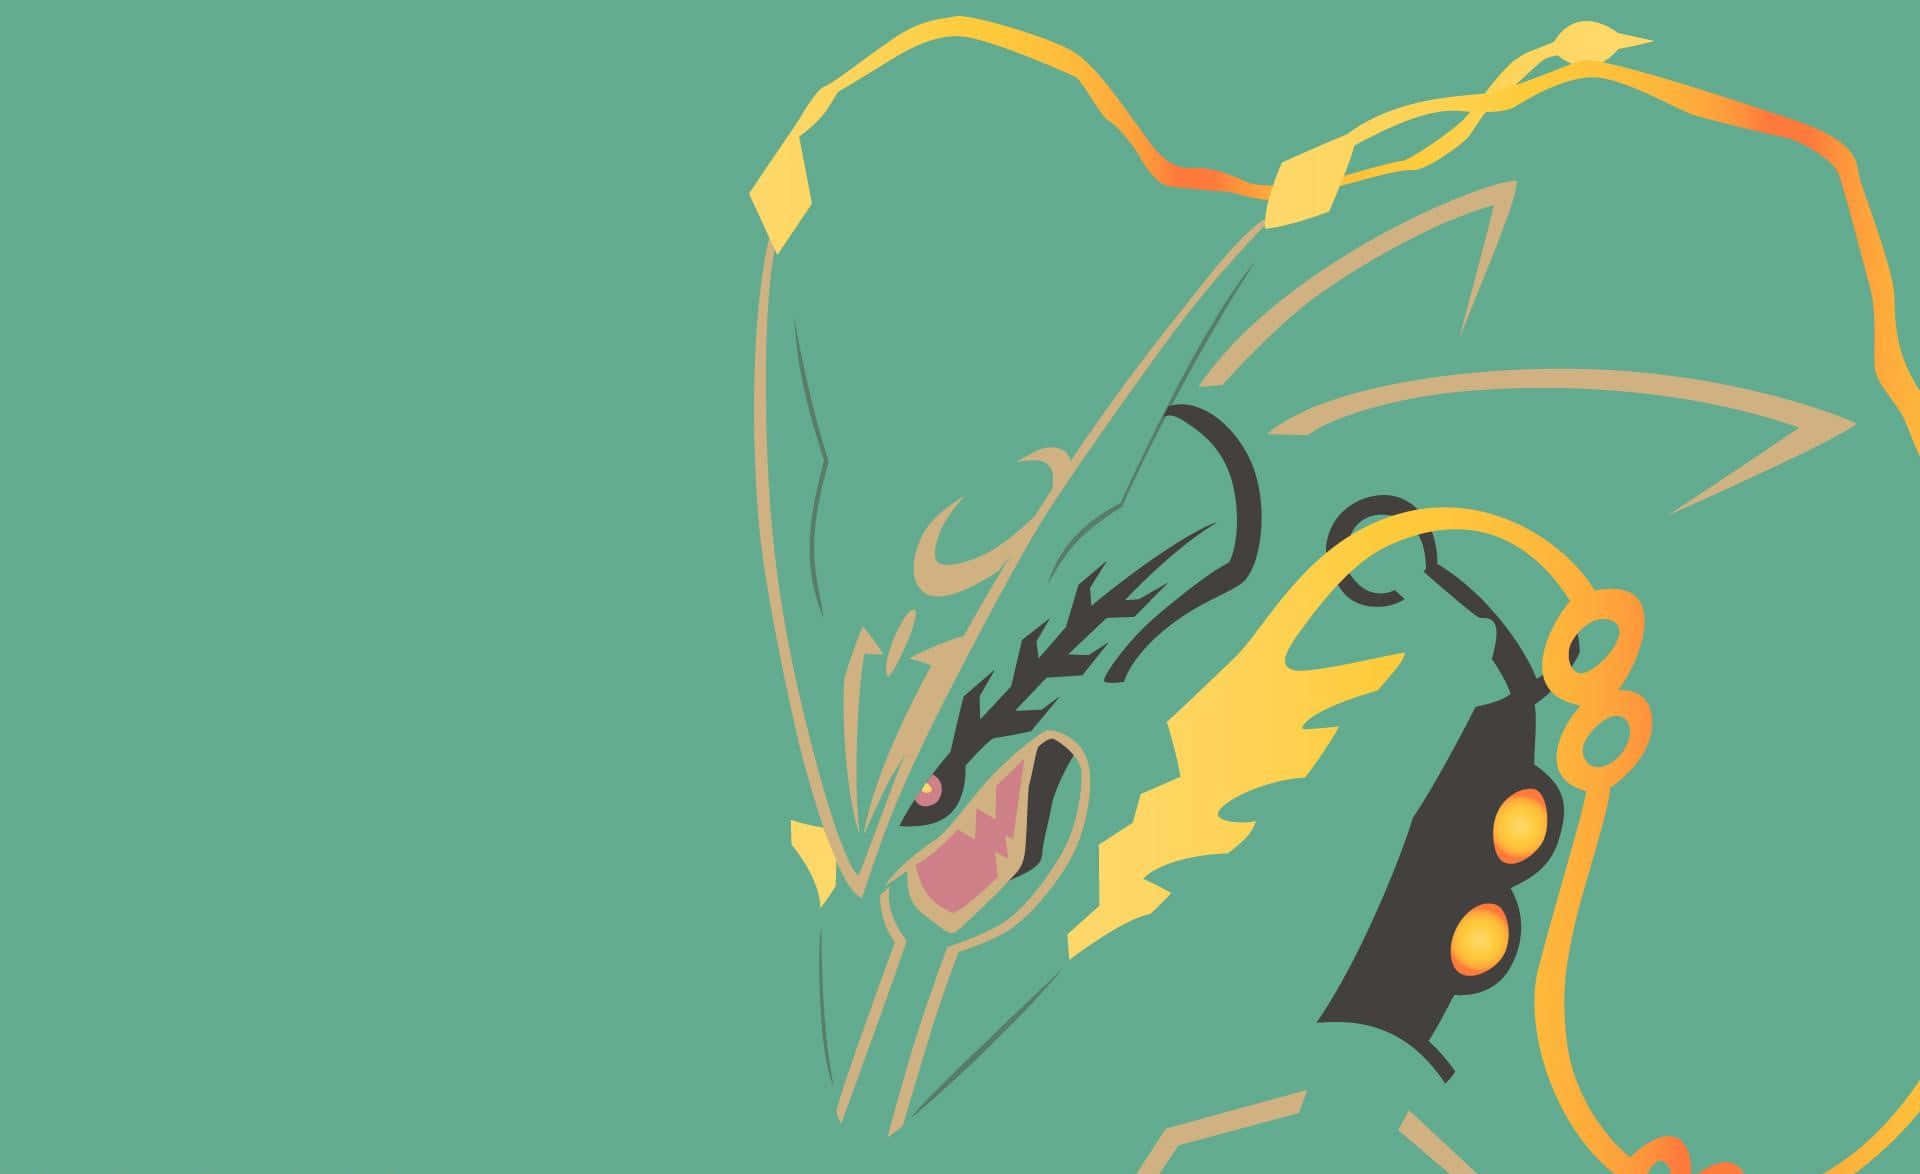 A simplistic depiction of the Pokémon charm. Wallpaper